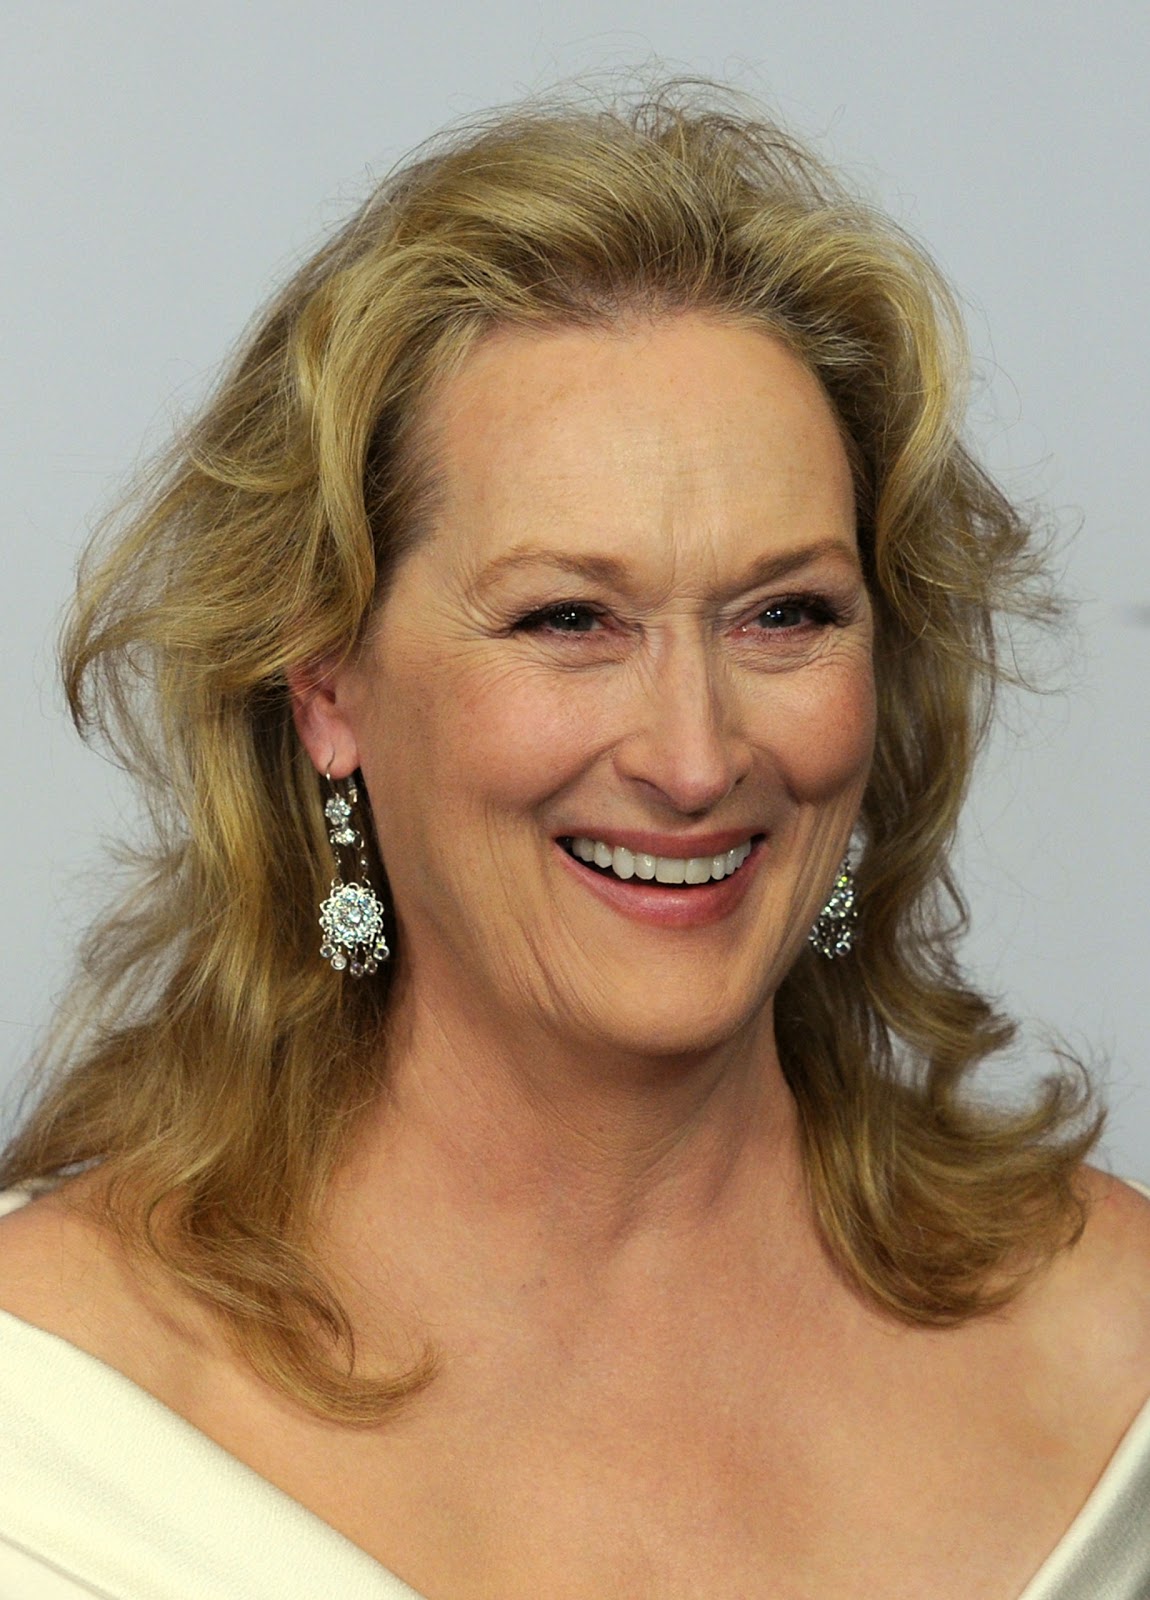 Pictures of meryl streep nude Meryl Streep